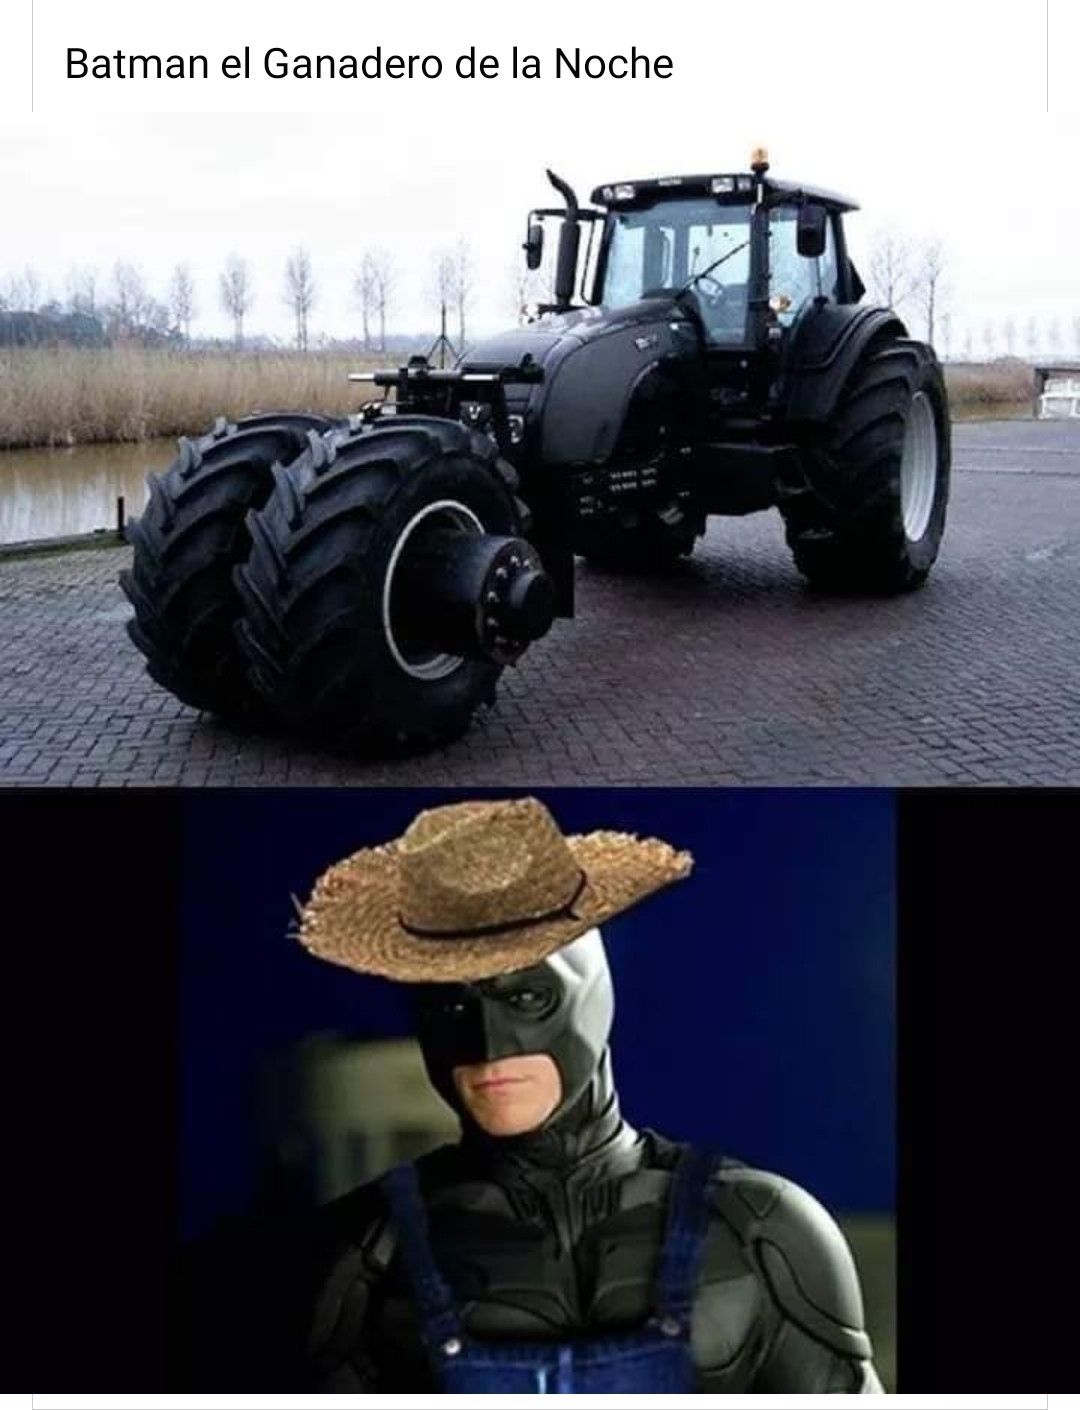 El granjero de la noche - meme